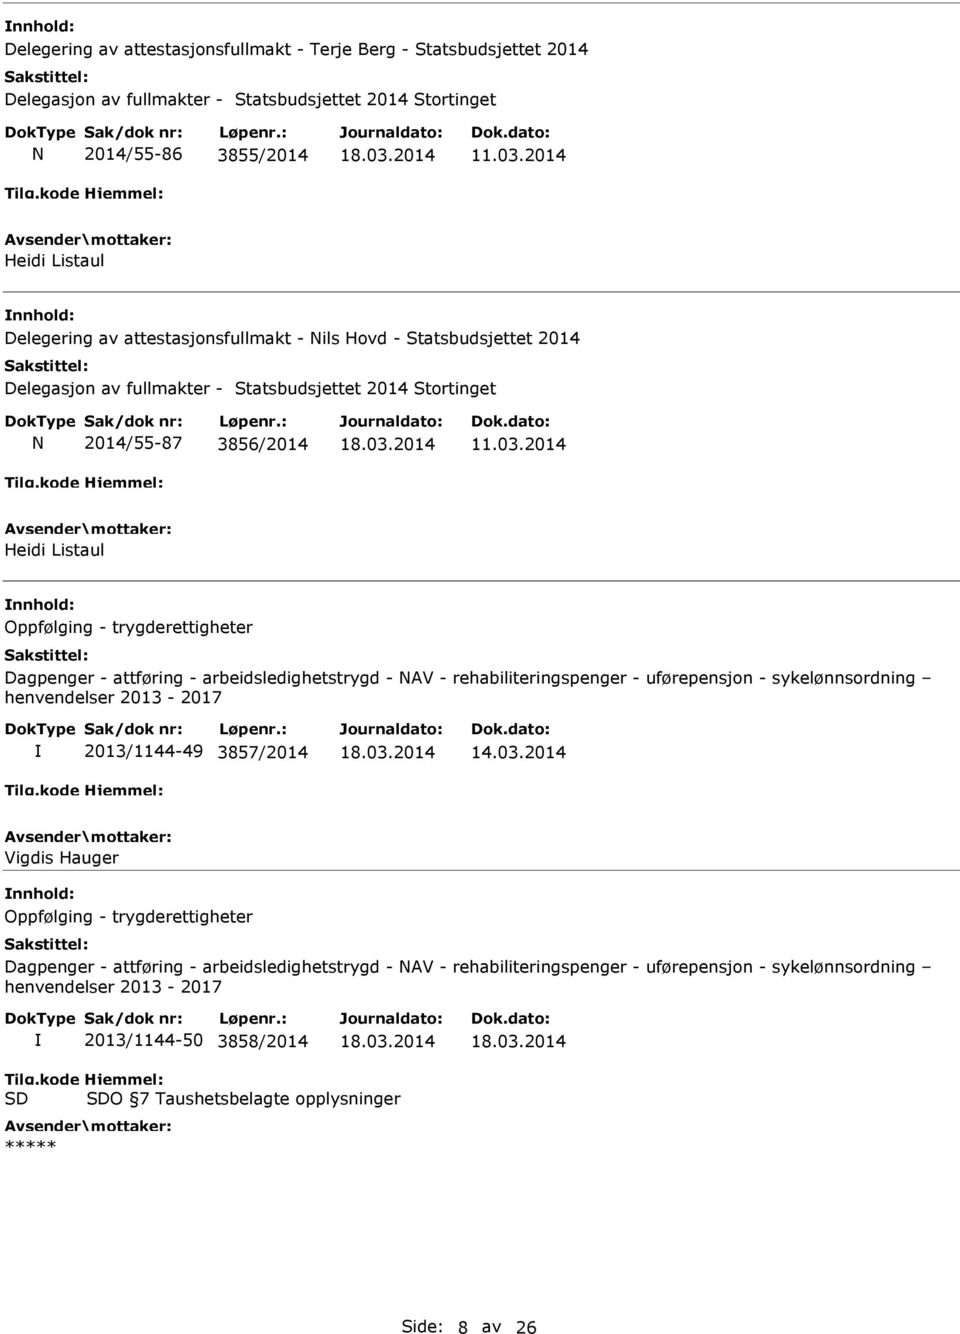 2014 Heidi Listaul Oppfølging - trygderettigheter Dagpenger - attføring - arbeidsledighetstrygd - NAV - rehabiliteringspenger - uførepensjon - sykelønnsordning henvendelser 2013-2017 2013/1144-49